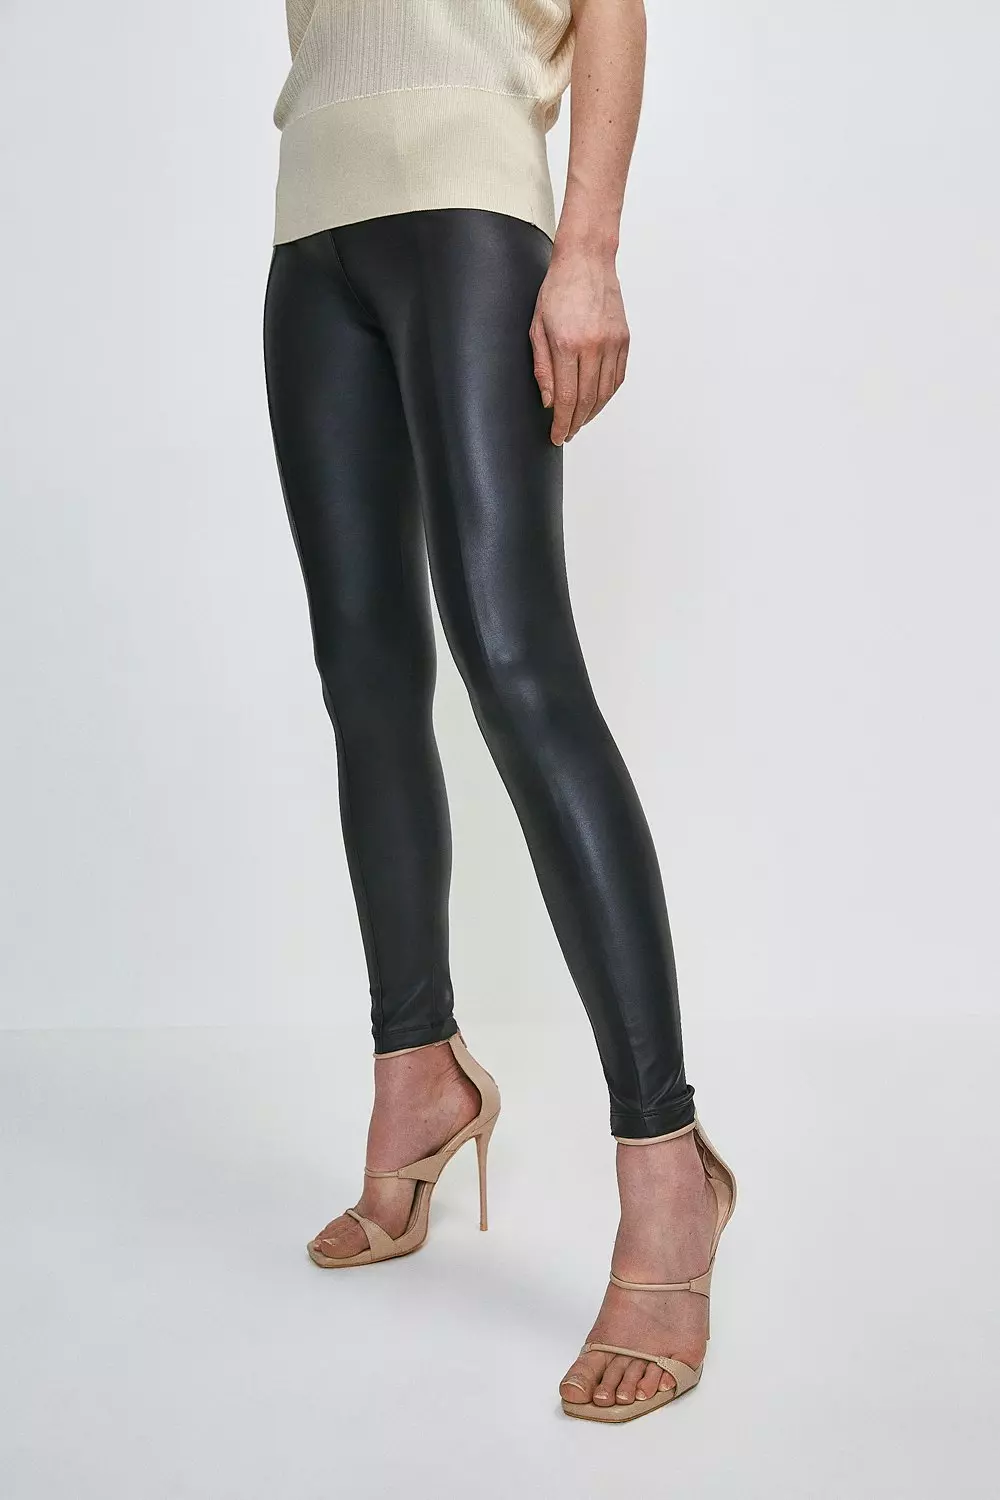 Seam Detail Leather Leggings - Women - Ready-to-Wear